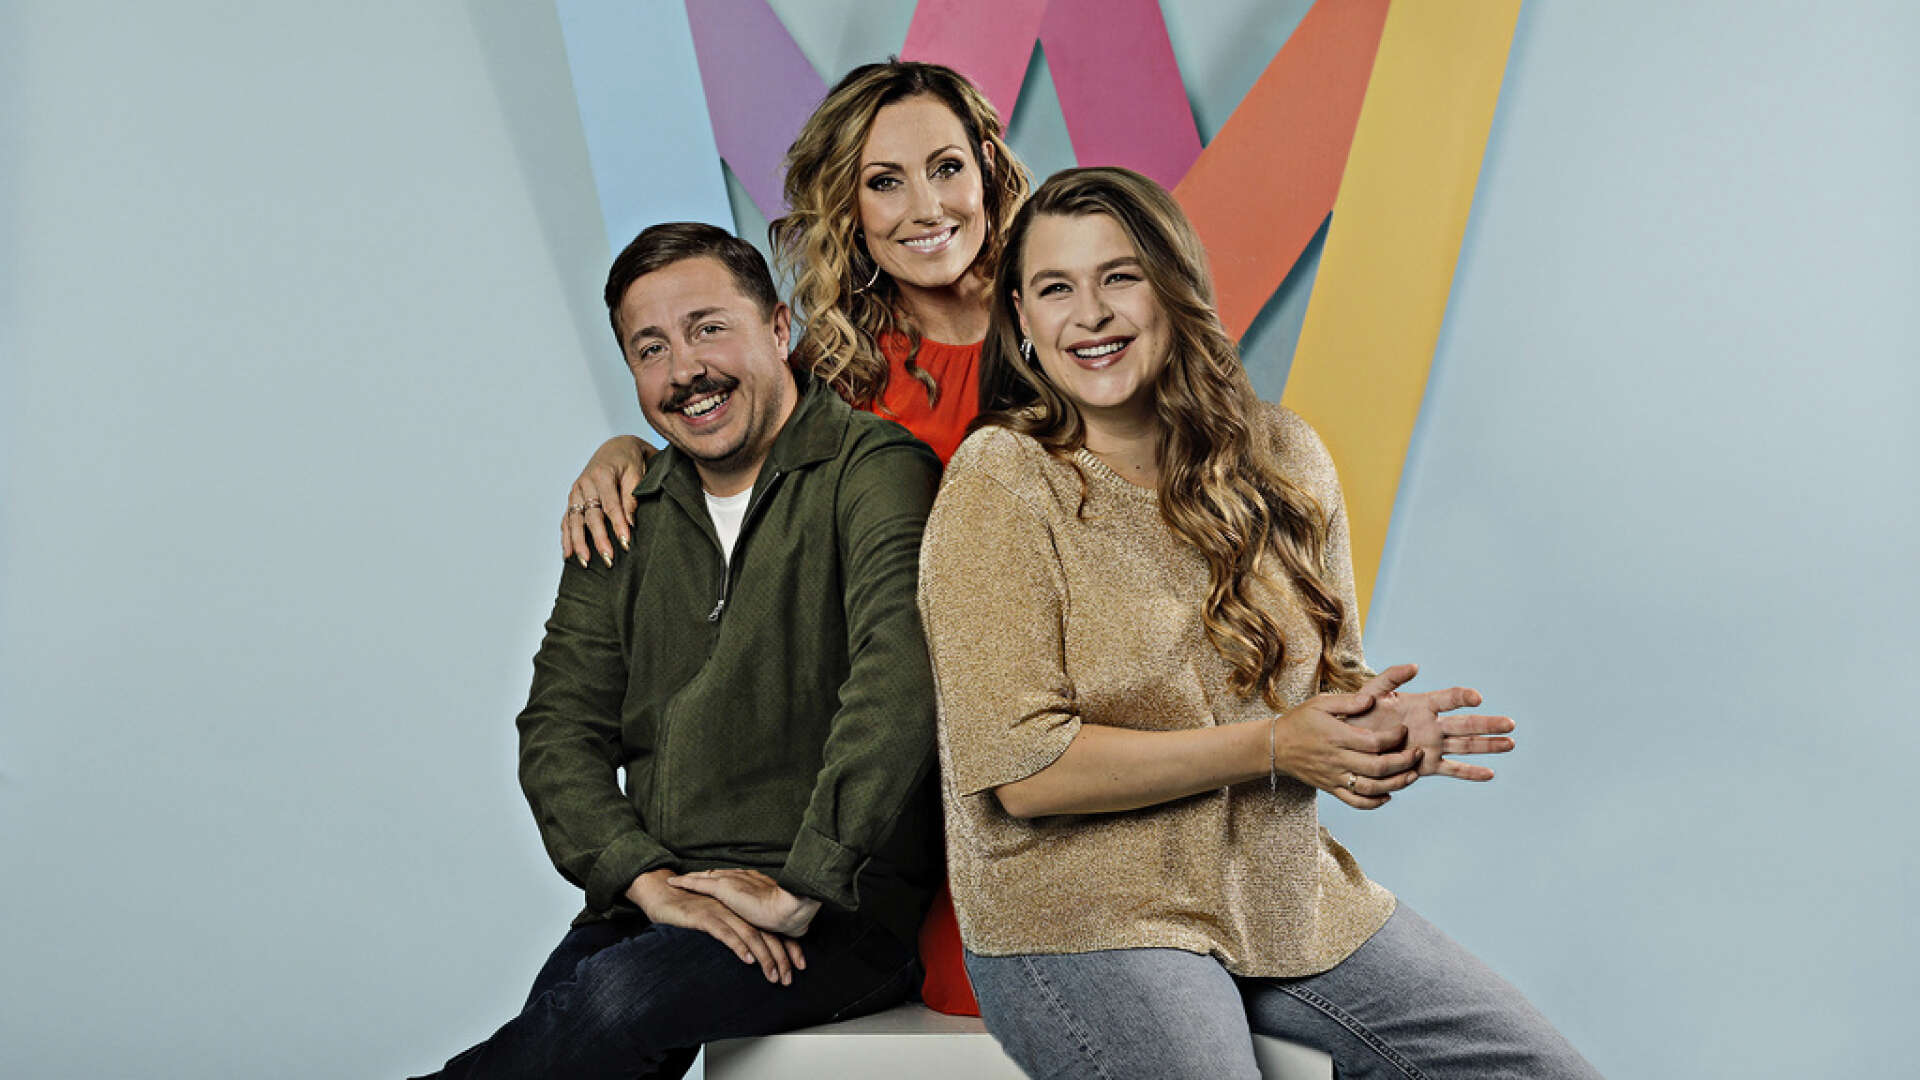 Lina Hedlund, Linnea Henriksson och David Sundin – det är programledarna för Melodifestivalen 2020.